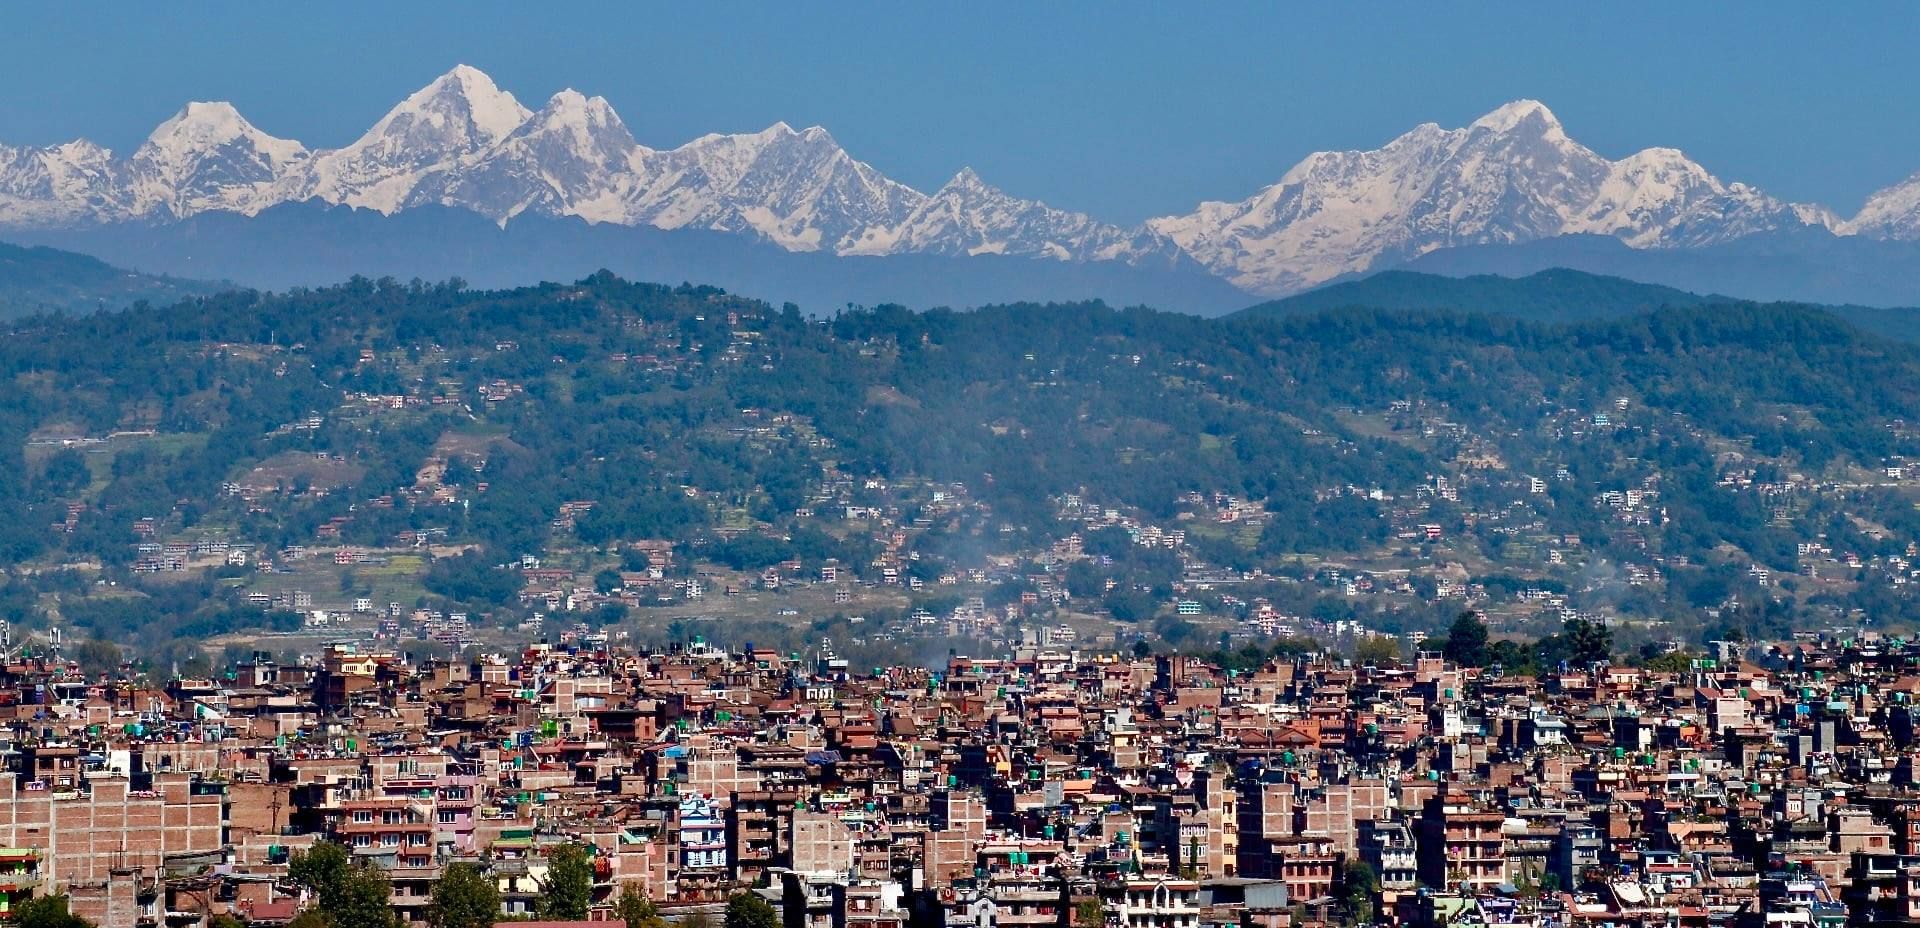 Jugal Himal beyond Bhaktapur in Kathmandu Valley